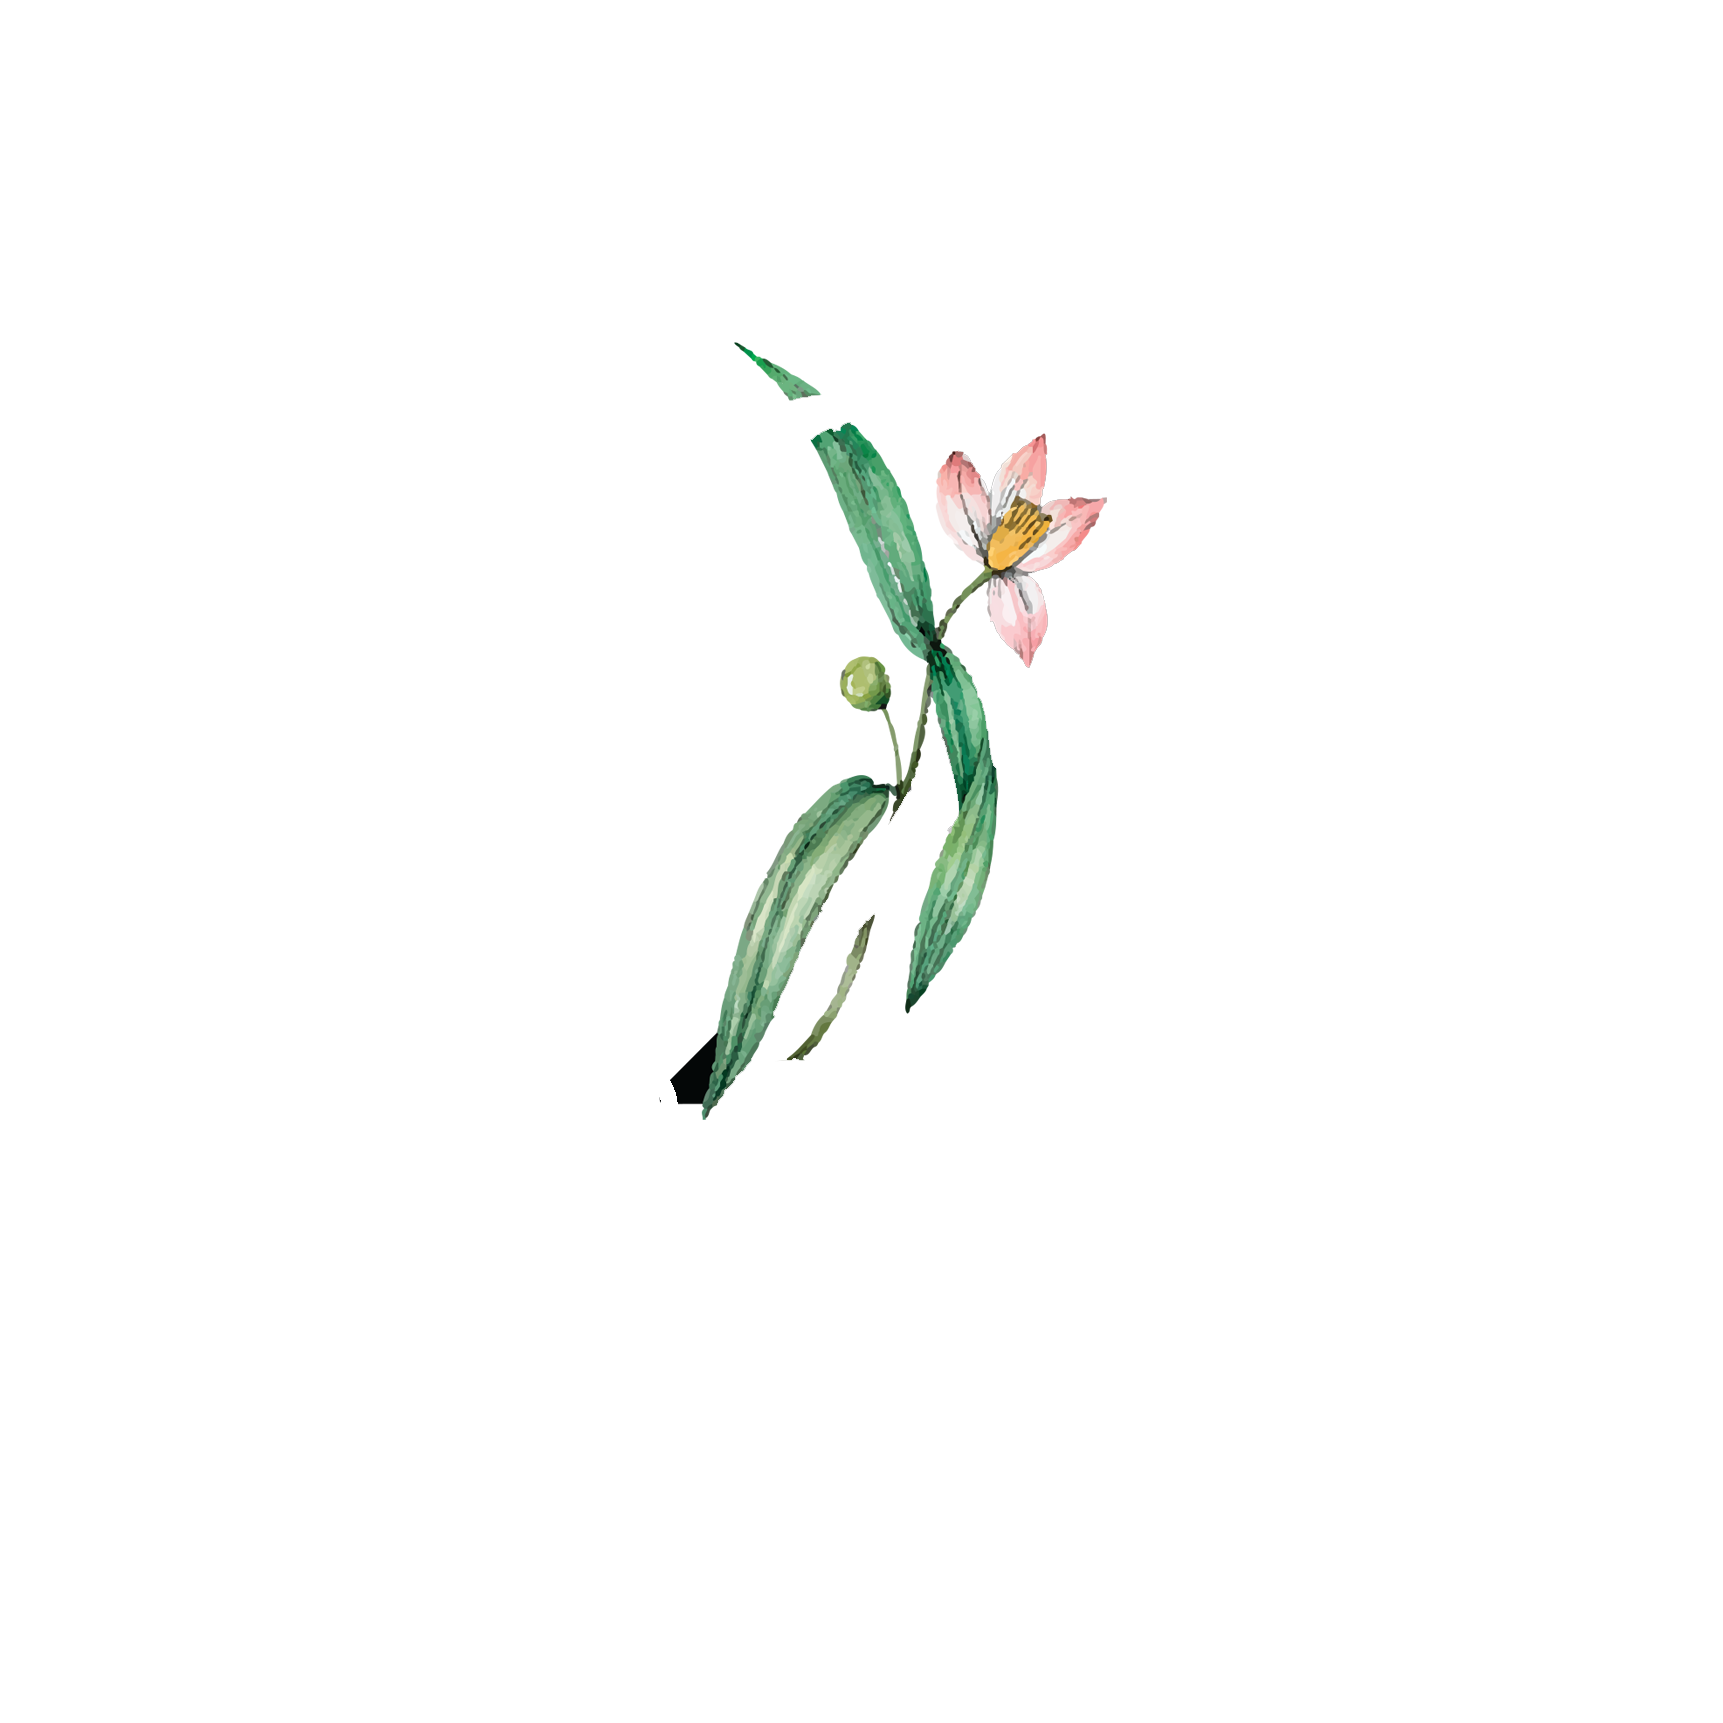 Click to read Day 2 Breath